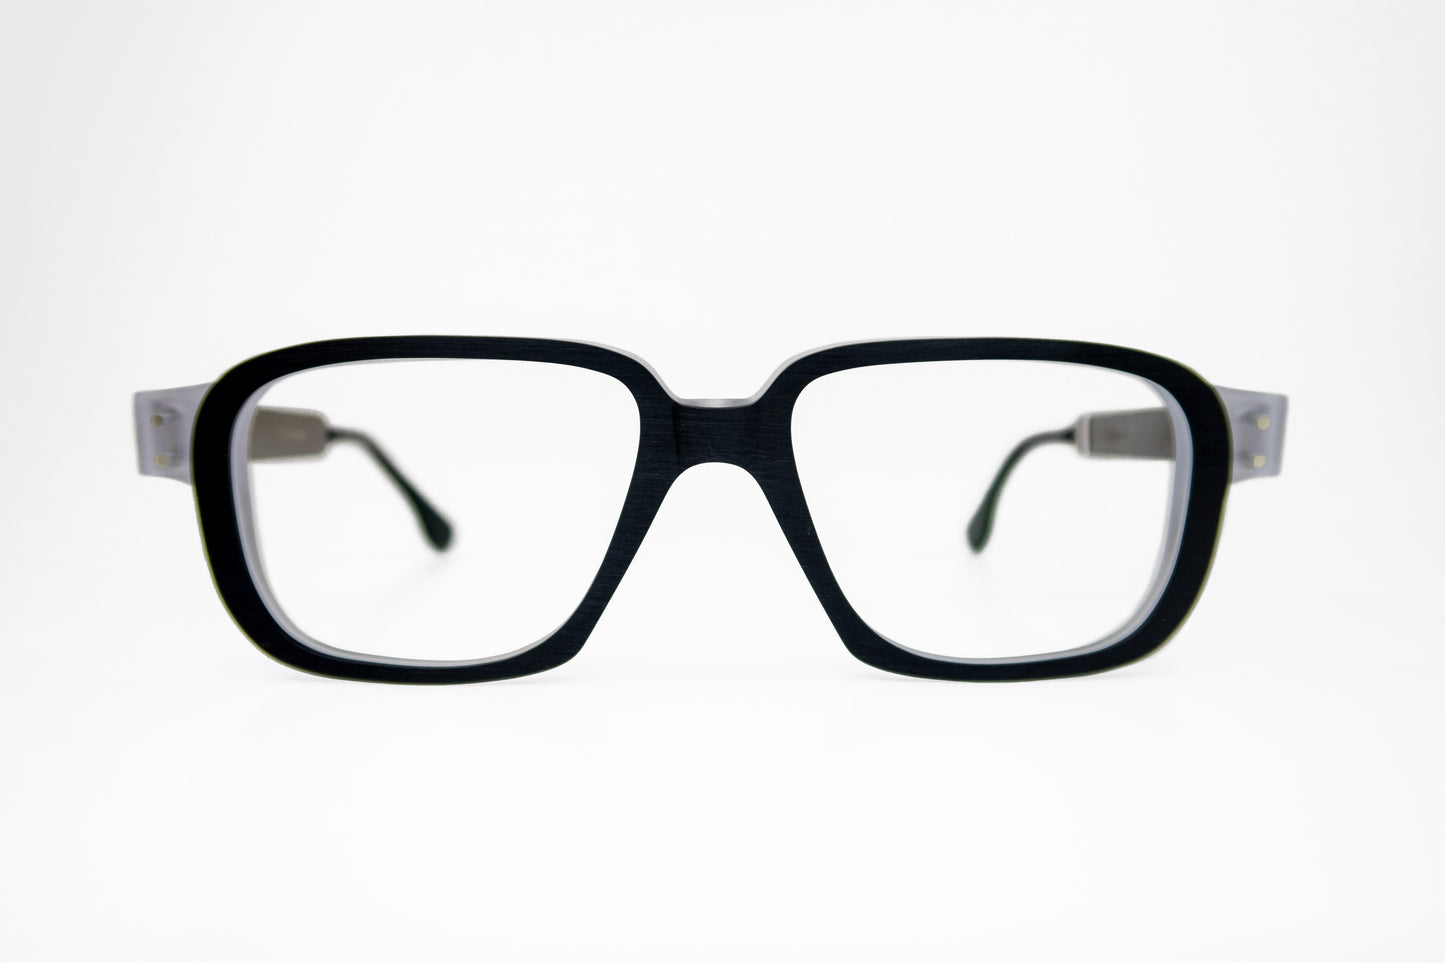 Clarke Rapp 009 Frames Glasses